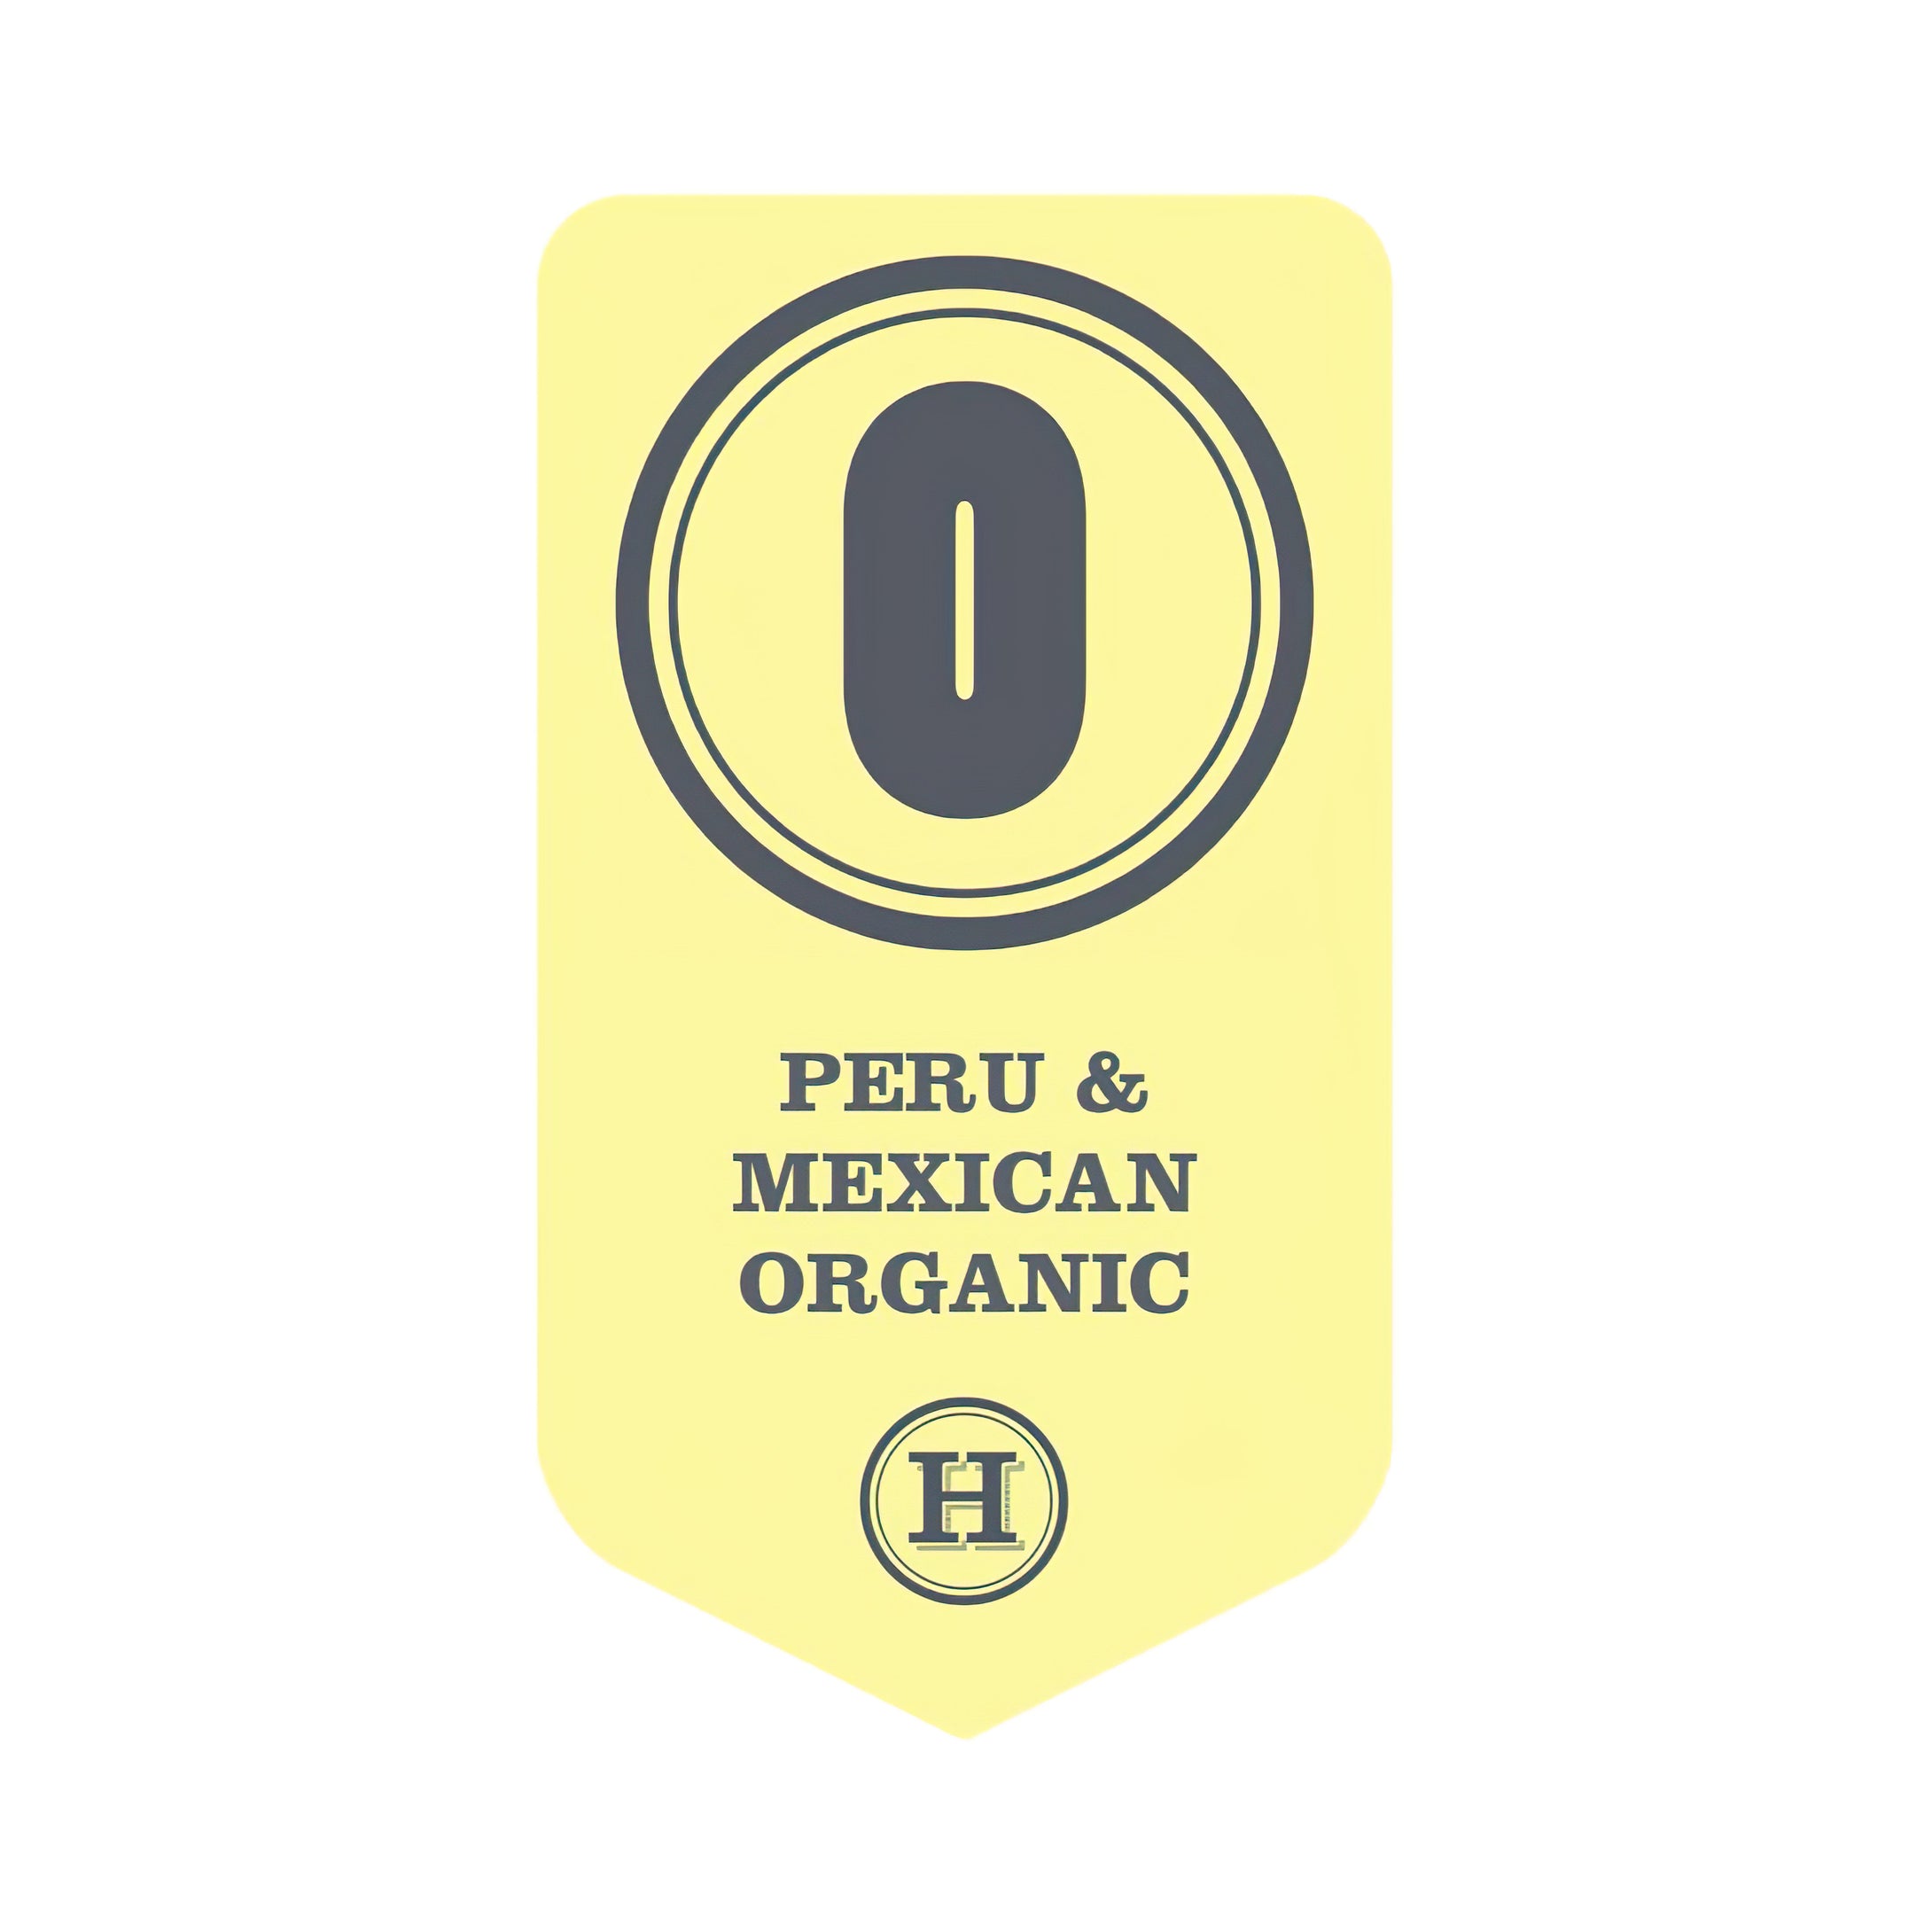 Peru & Mexican Organic